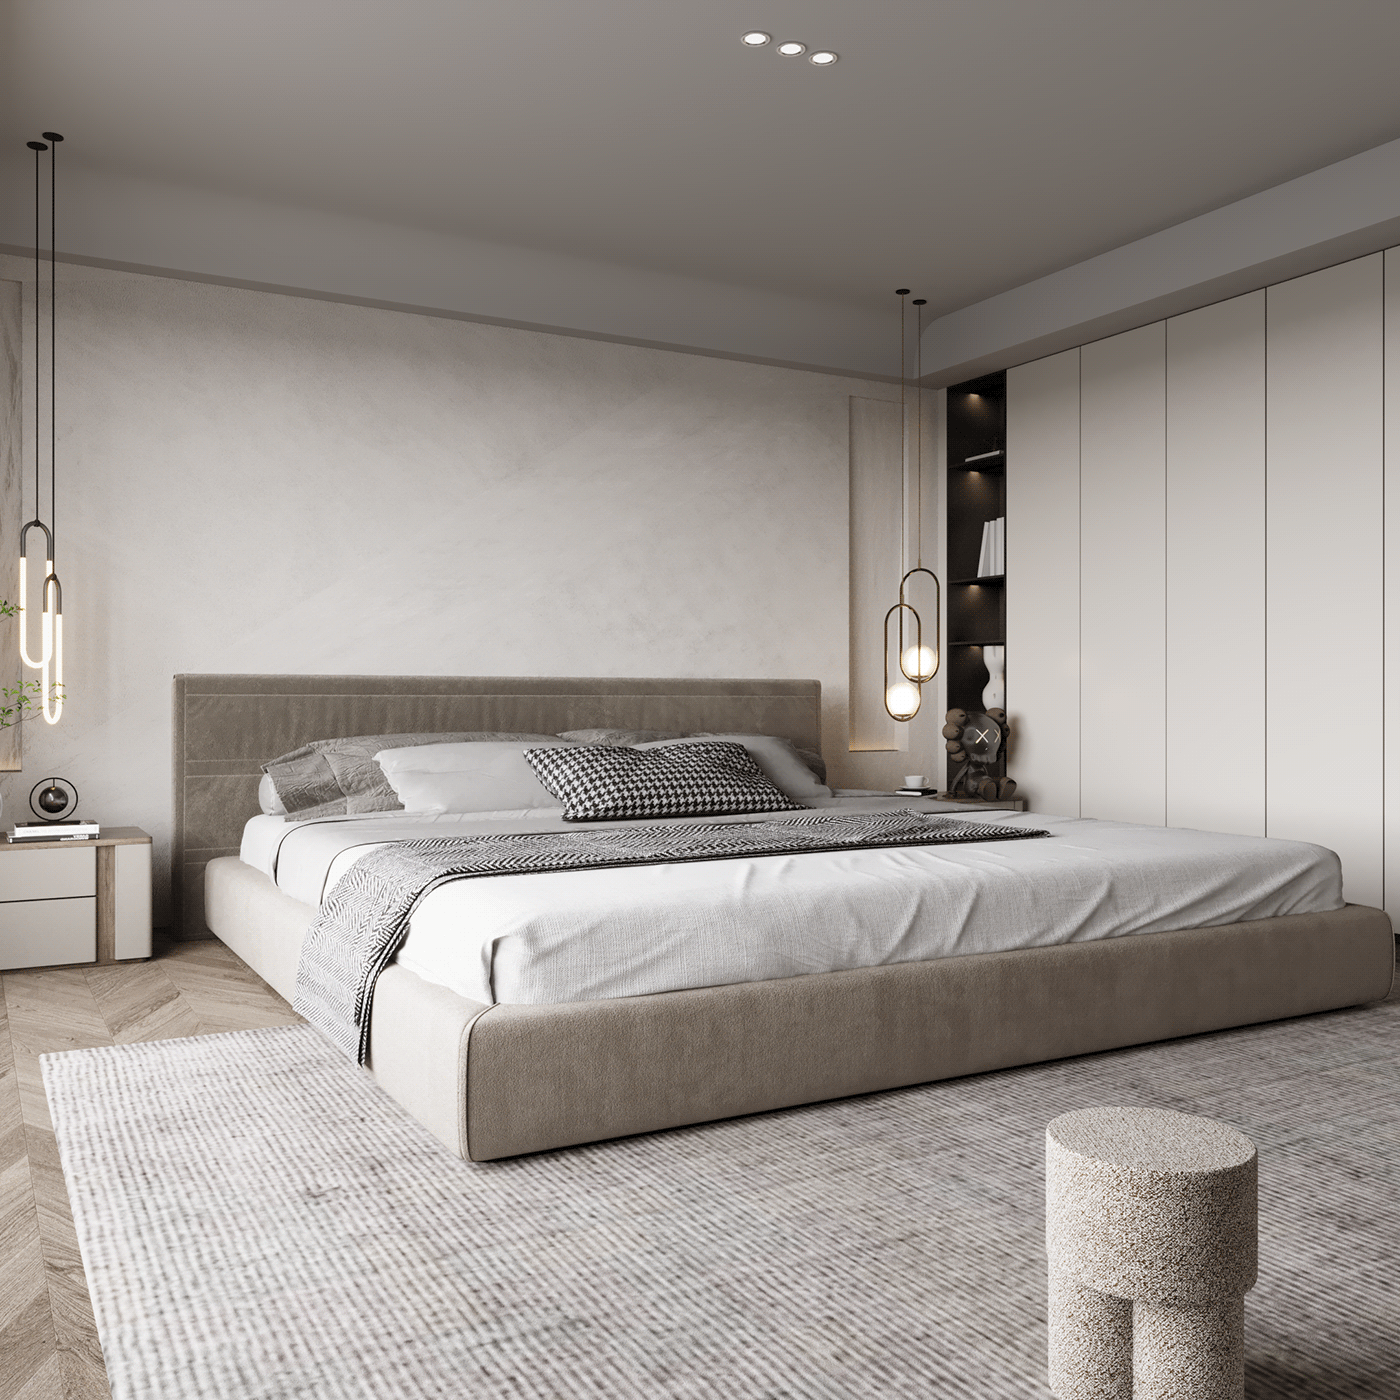 3ds max ARQUITETURA bedroom corona designdeinteriores interiores